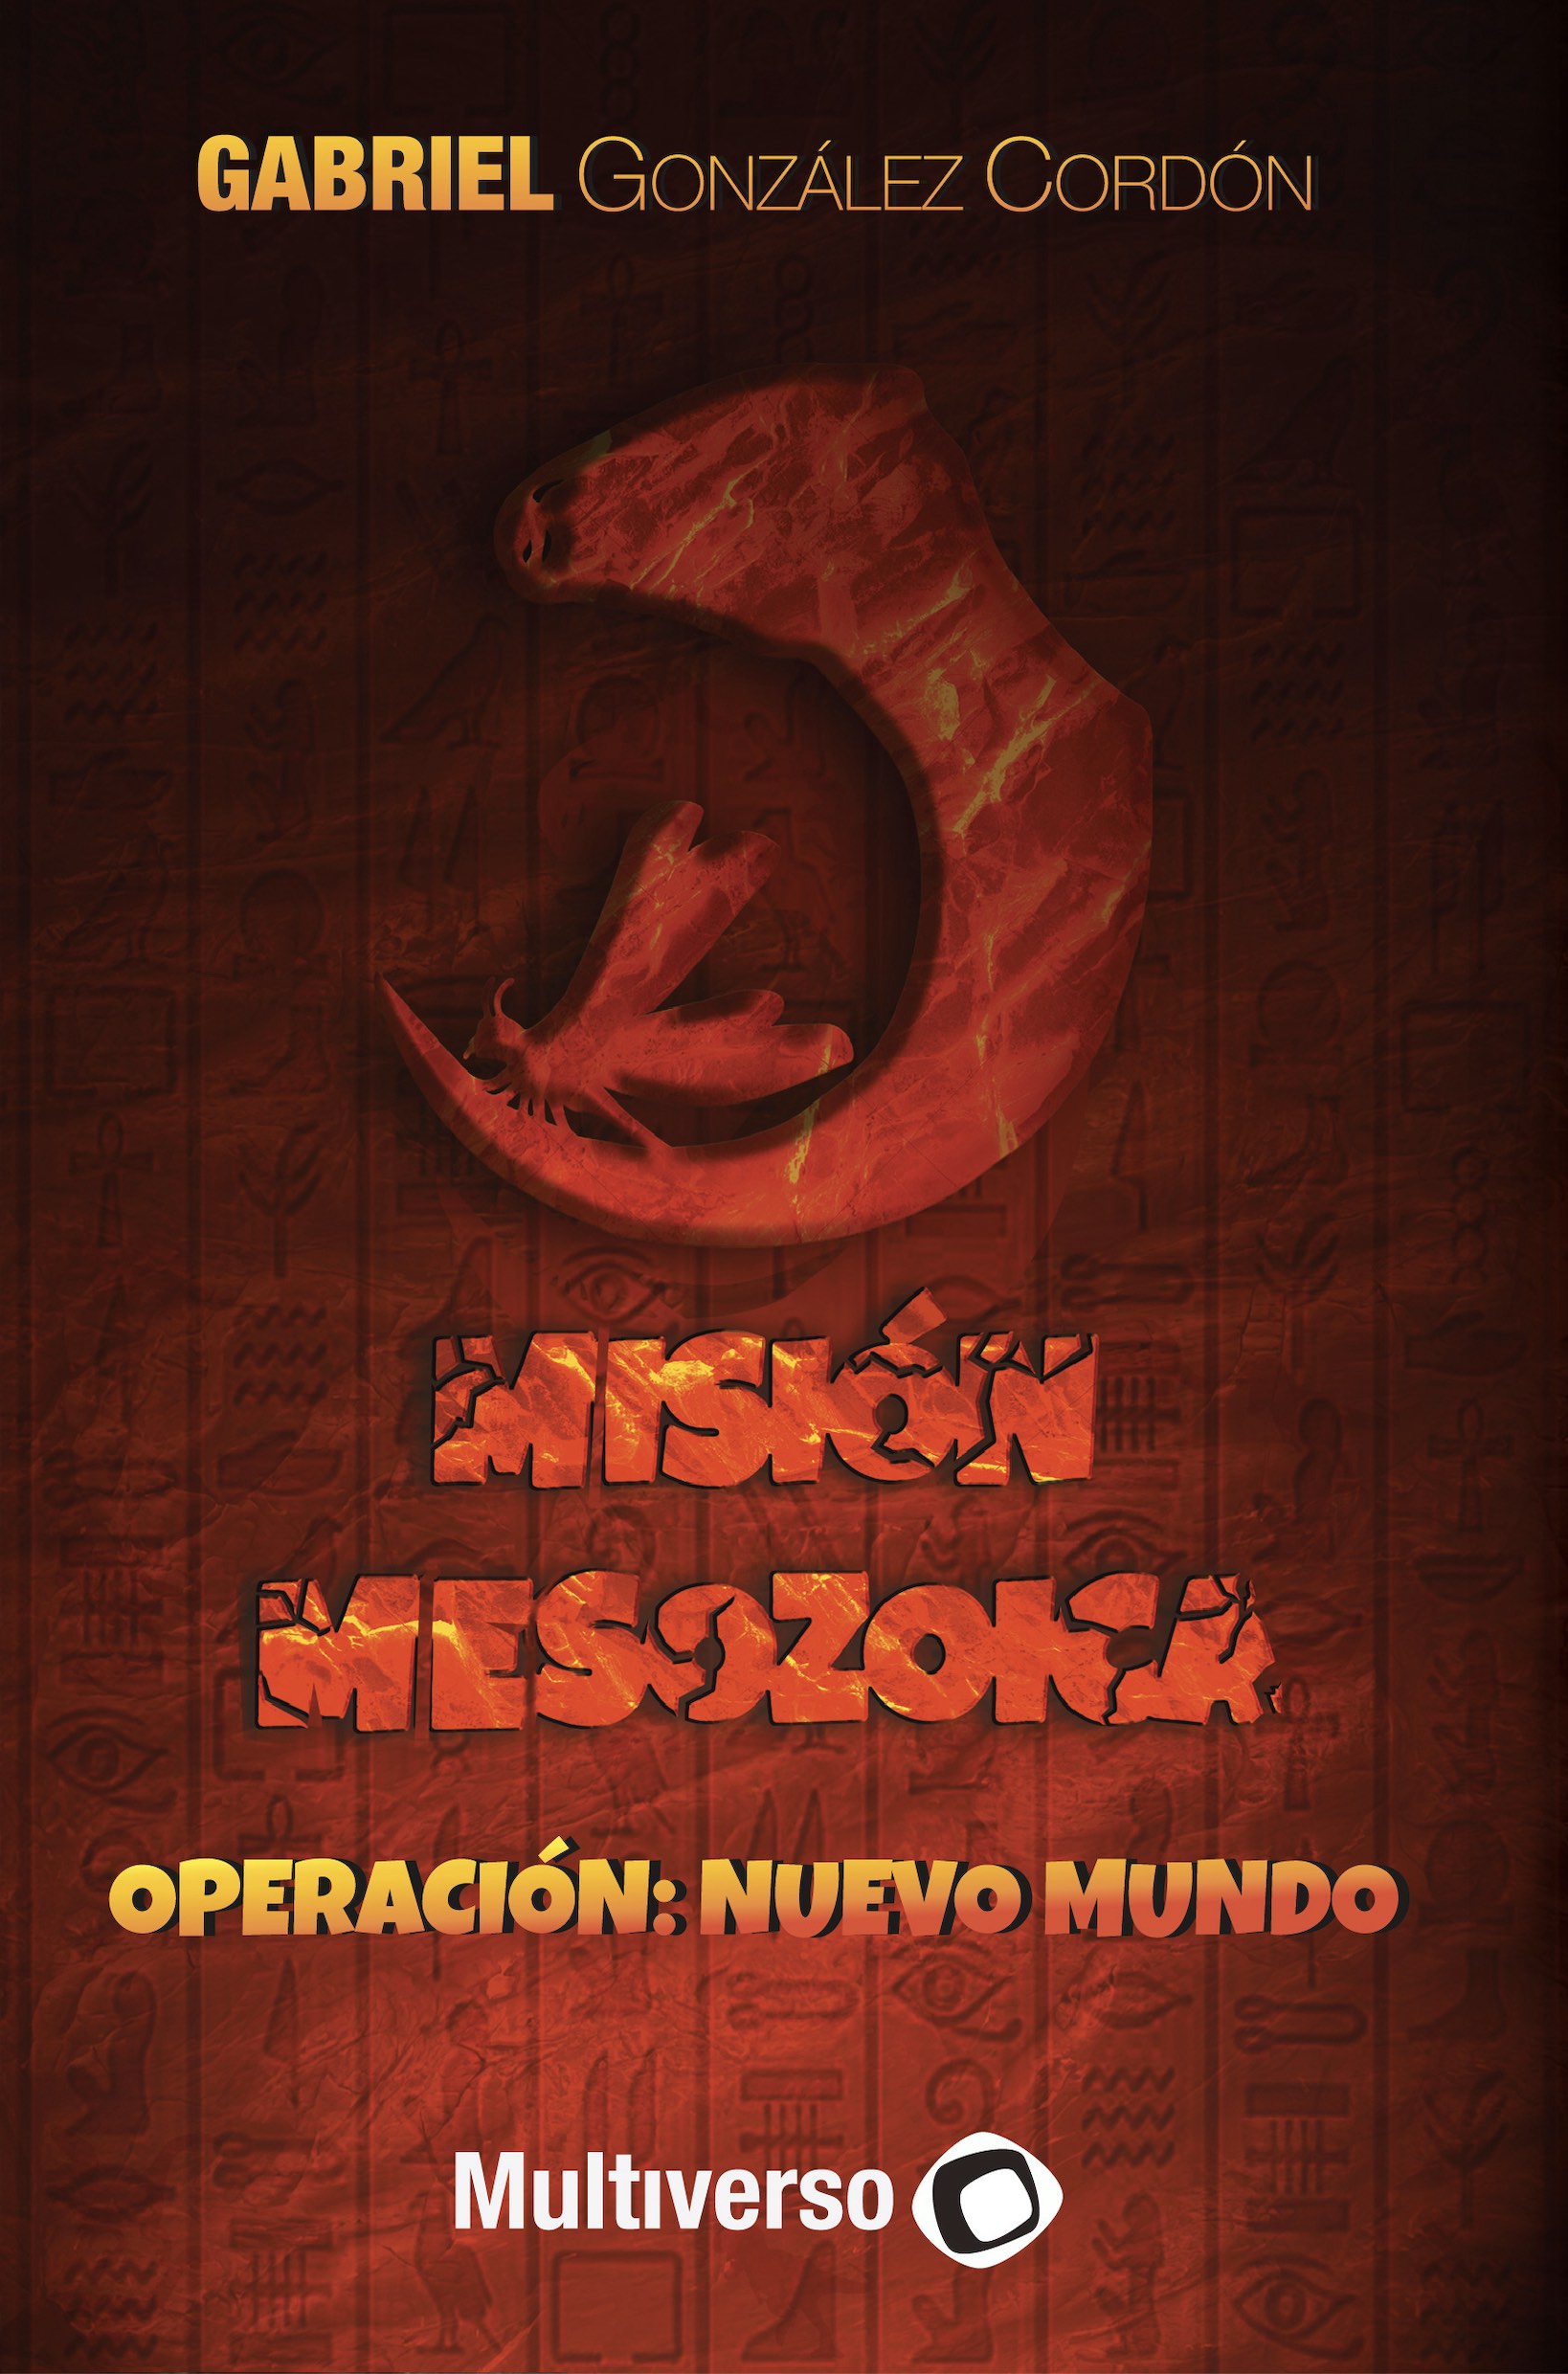 Gabriel González nos presenta su primer libro Misión Mesozoica: Operación nuevo mundo